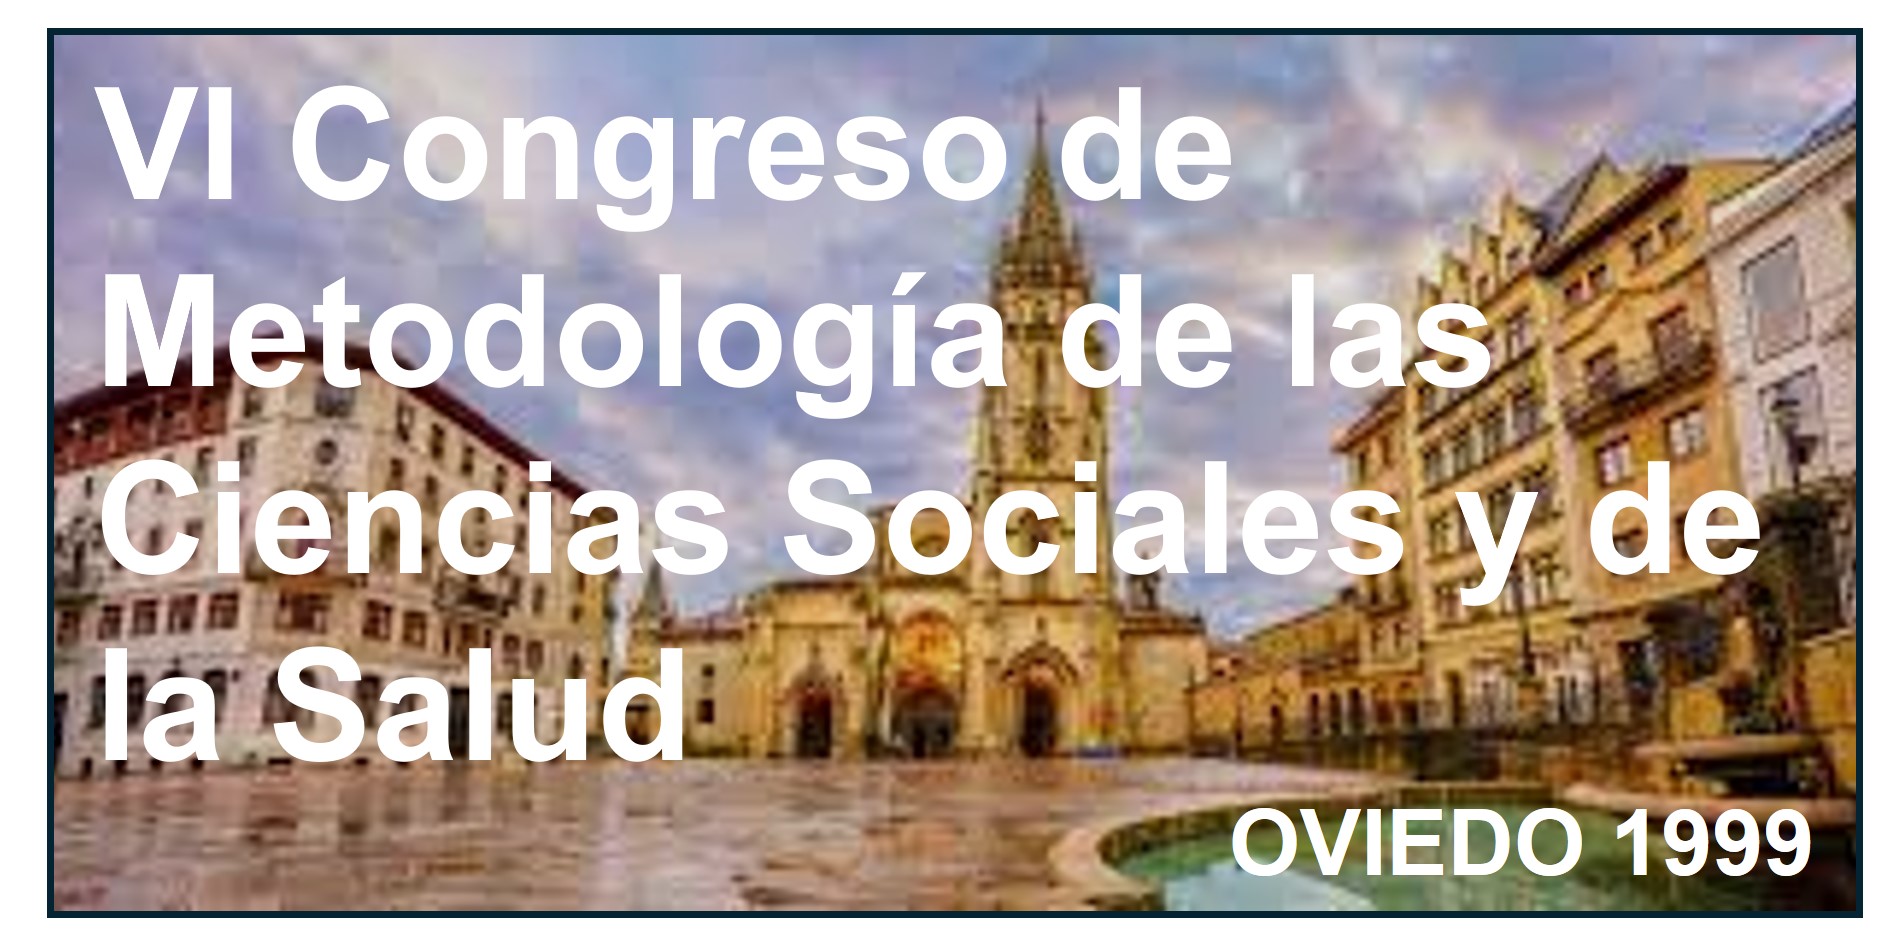    VI Congreso de Metodología de las Ciencias Sociales y de la Salud